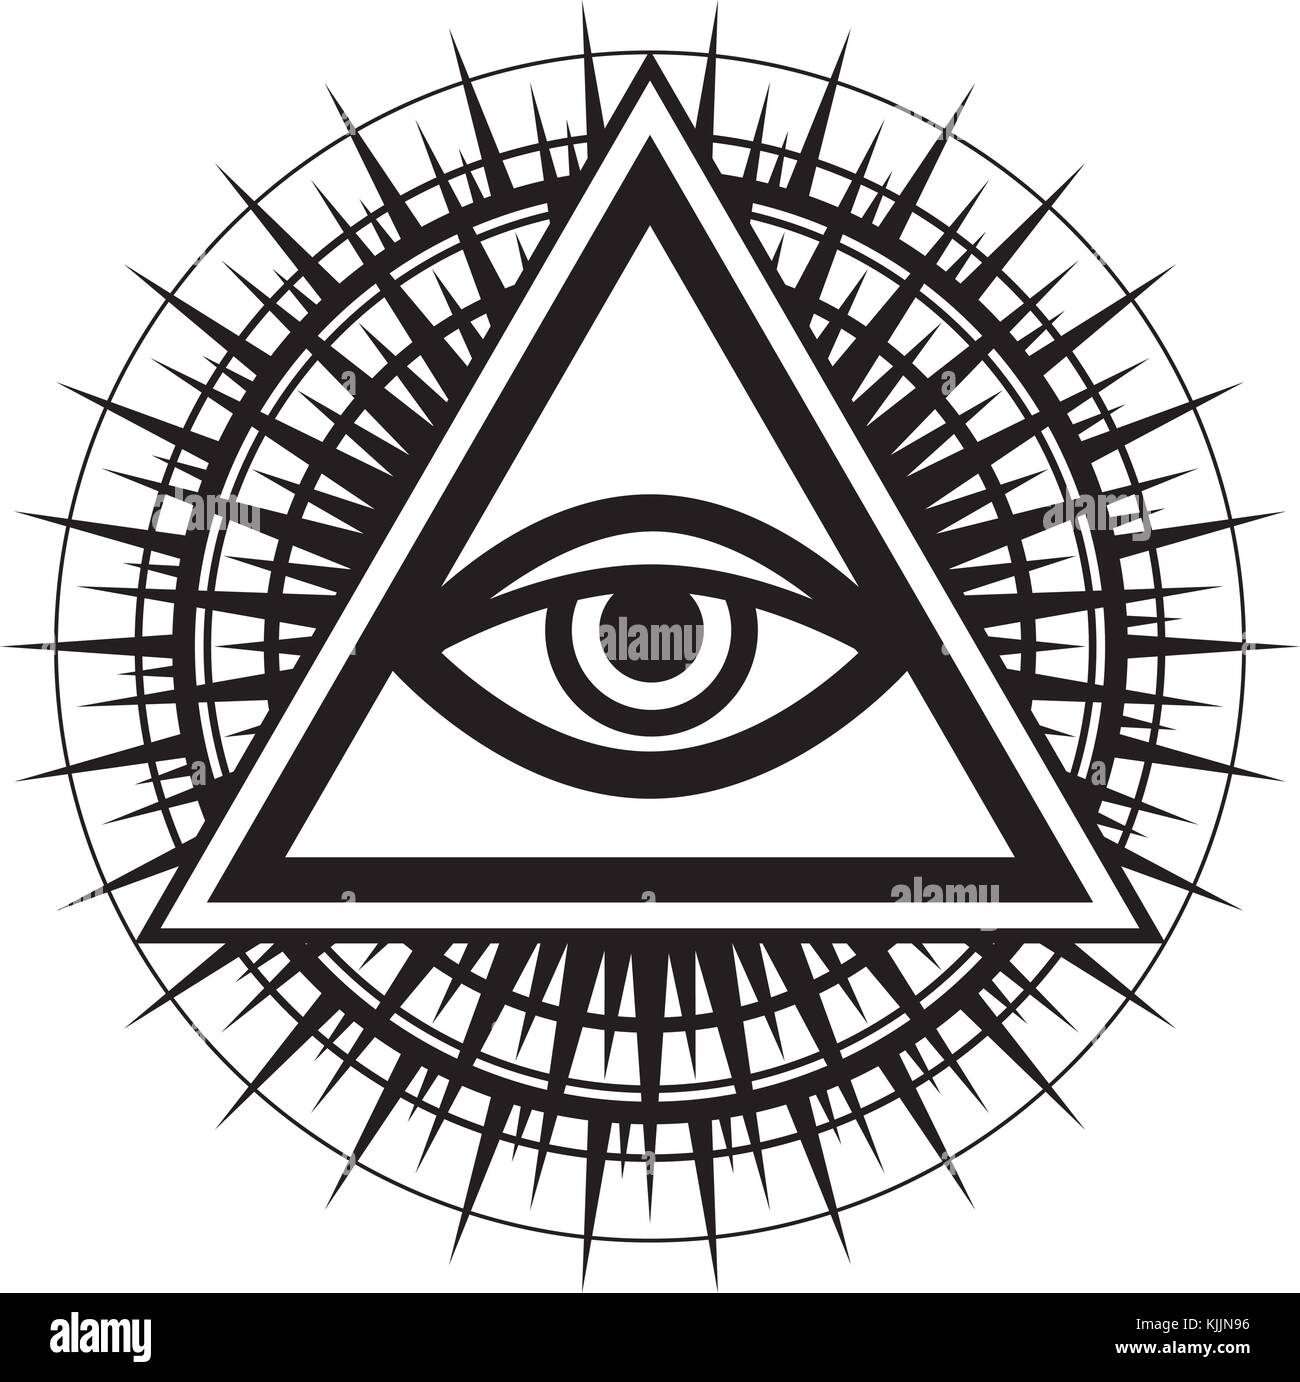 illuminati signs in logos